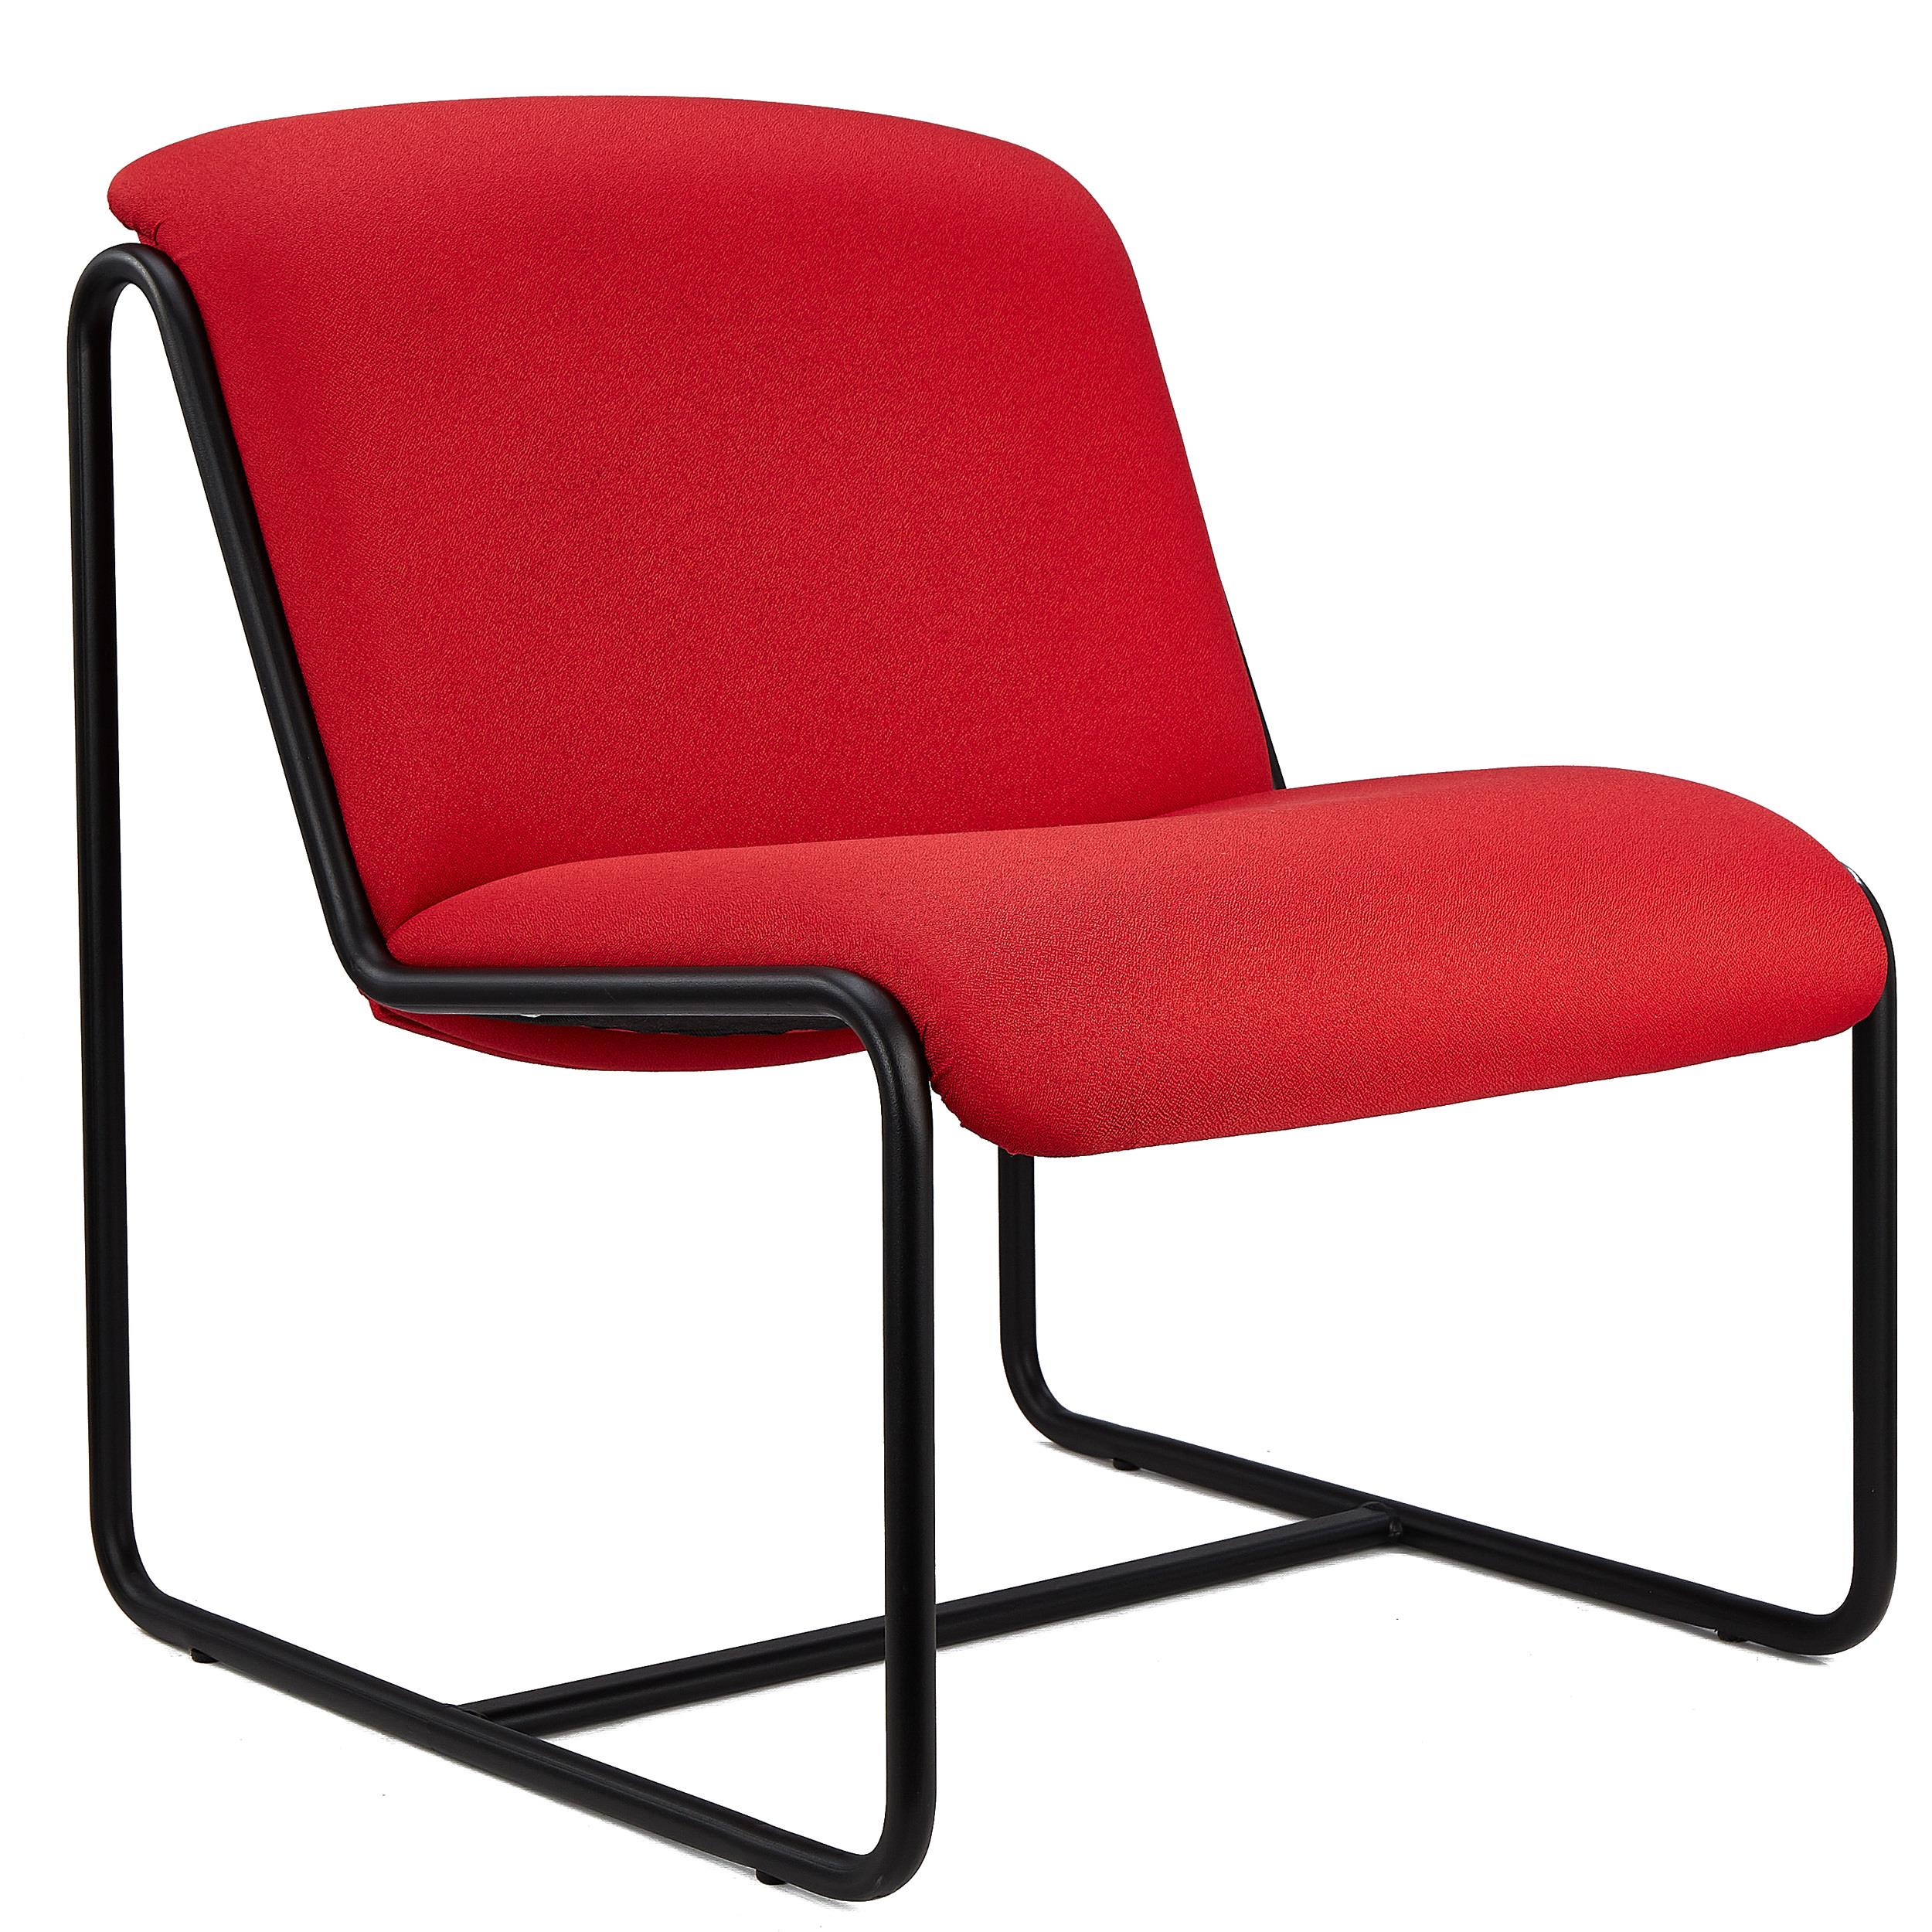 Chaise visiteur LIMA, Design Exclusif, Structure Métallique, en Tissu Rouge